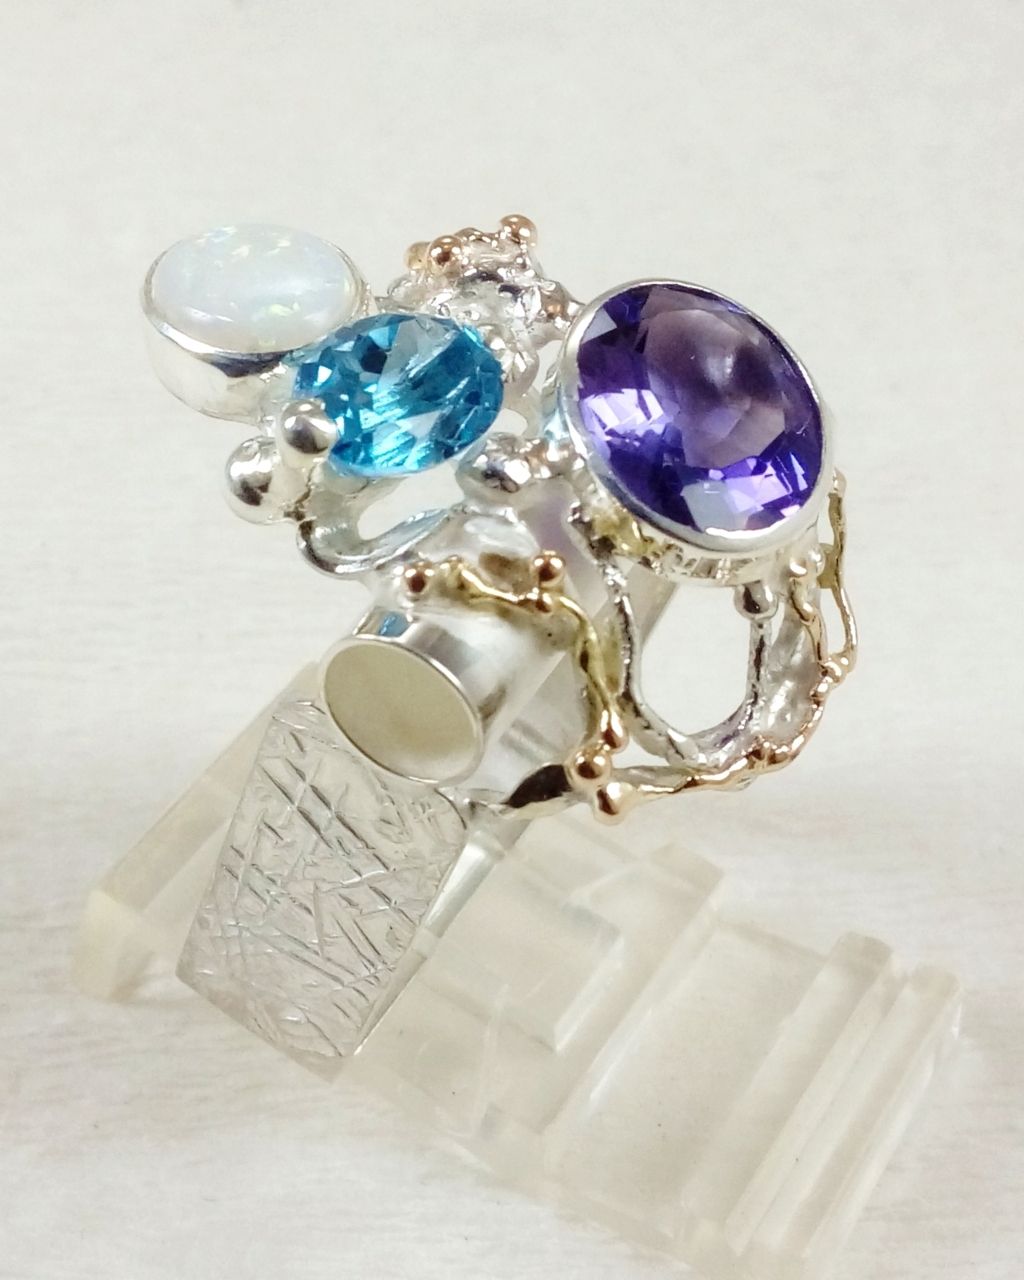 gregory pyra piro Schmuckkunst, handgefertigter Ring 2055, Ring mit Amethyst und blau Topas, Ring mit Opal und Edelsteinen, Ringe, die in Kunstgalerien verkauft werden, von Künstlern handgefertigte Ringe, Zeitgenössischer Schmuck mit Farbedelsteinen, wo Sie Schmuck im klassischen Stil finden und kaufen können, wo Sie Schmuck im Retro-Stil finden und kaufen können, Wo findet man Schmuck mit Jugendstil-Mode Motiv, zeitgenössischer Schmuck mit klassischem Fashion-Appeal, handgefertigter Schmuck im Retro-Stil